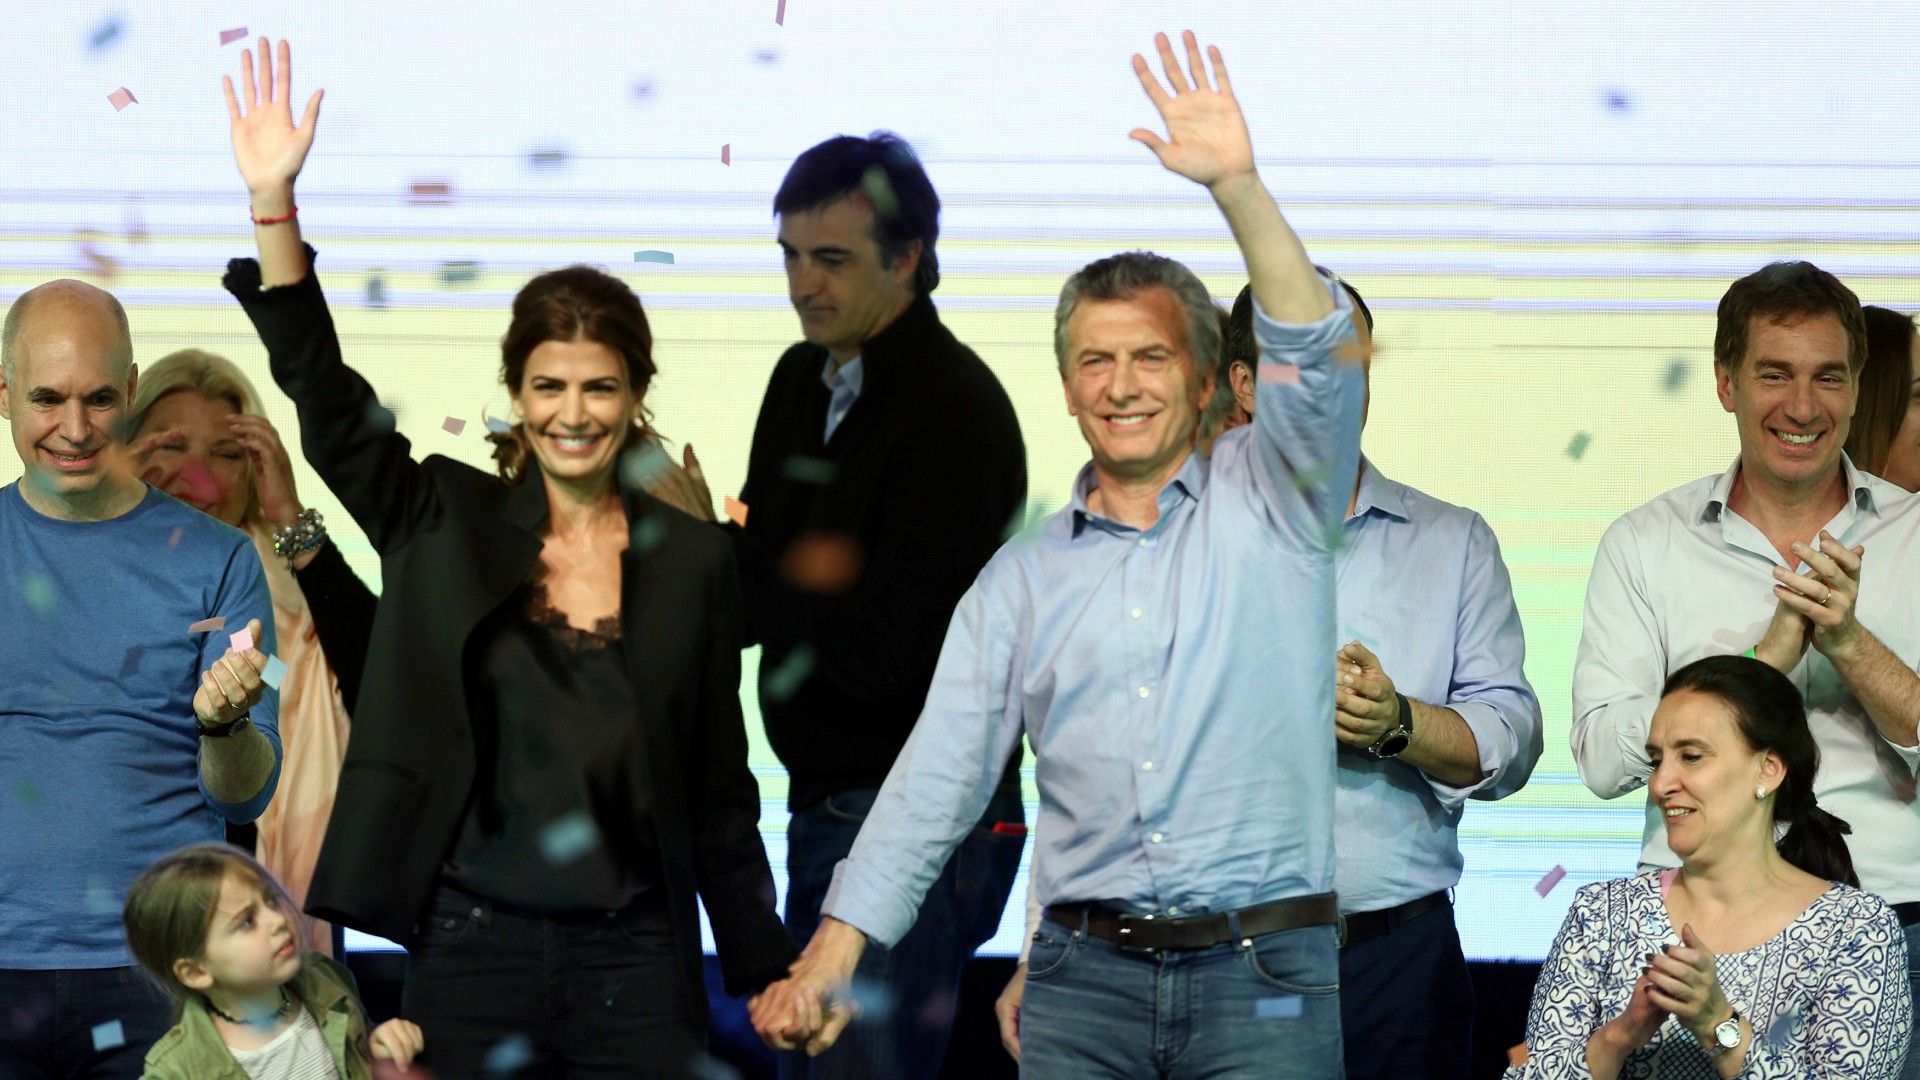 El presidente Macri triunfa en las elecciones legislativas argentinas